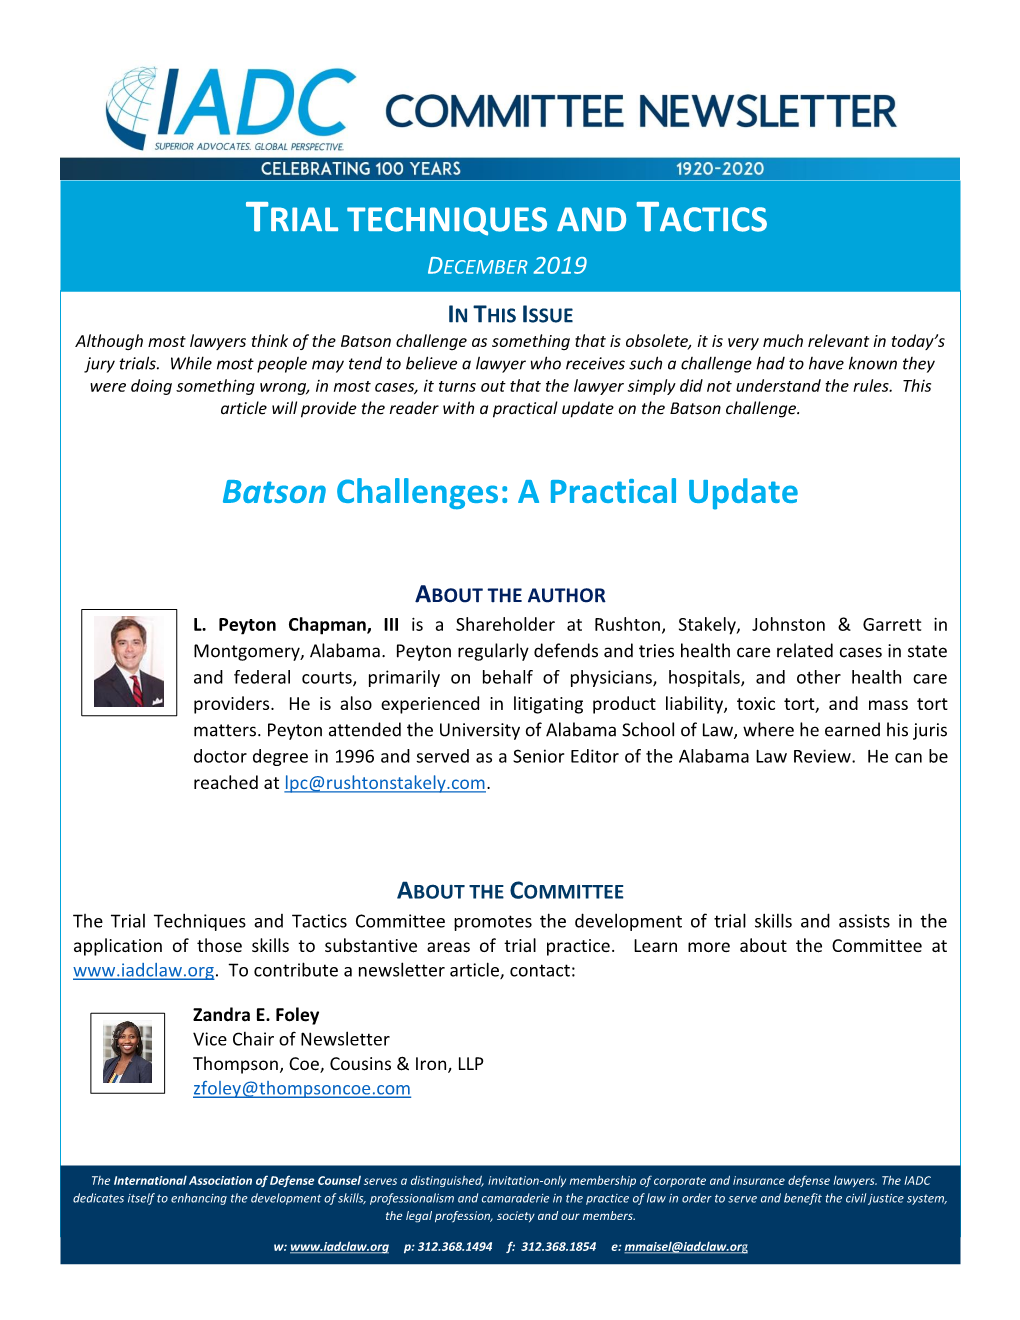 Trial Techniques and Tactics